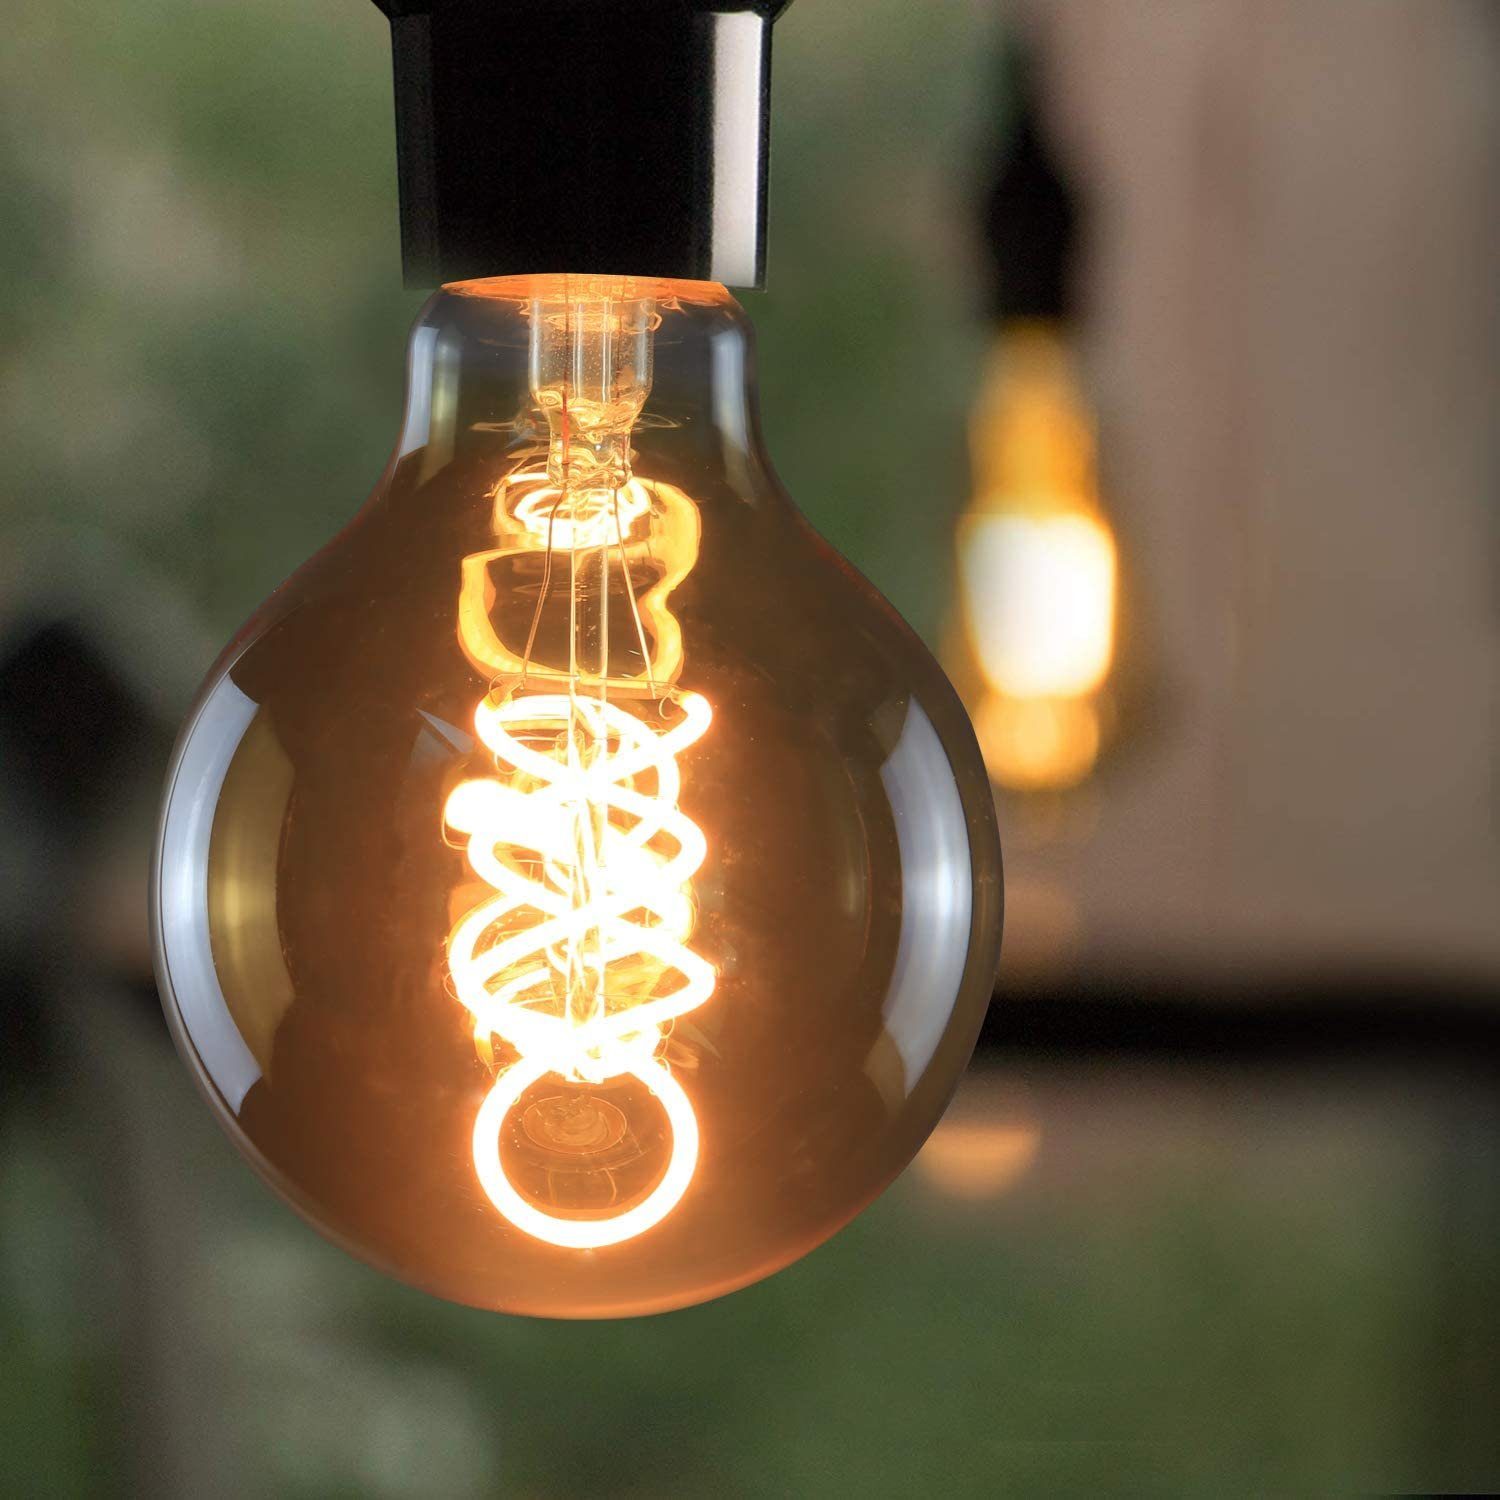 ZMH »Edison Glühbirne 4W, G80 Retro Kugel Glühlampe Dekorative Globelampen  Warmweiß Filament Birne« LED-Leuchtmittel, 1 Stück online kaufen | OTTO